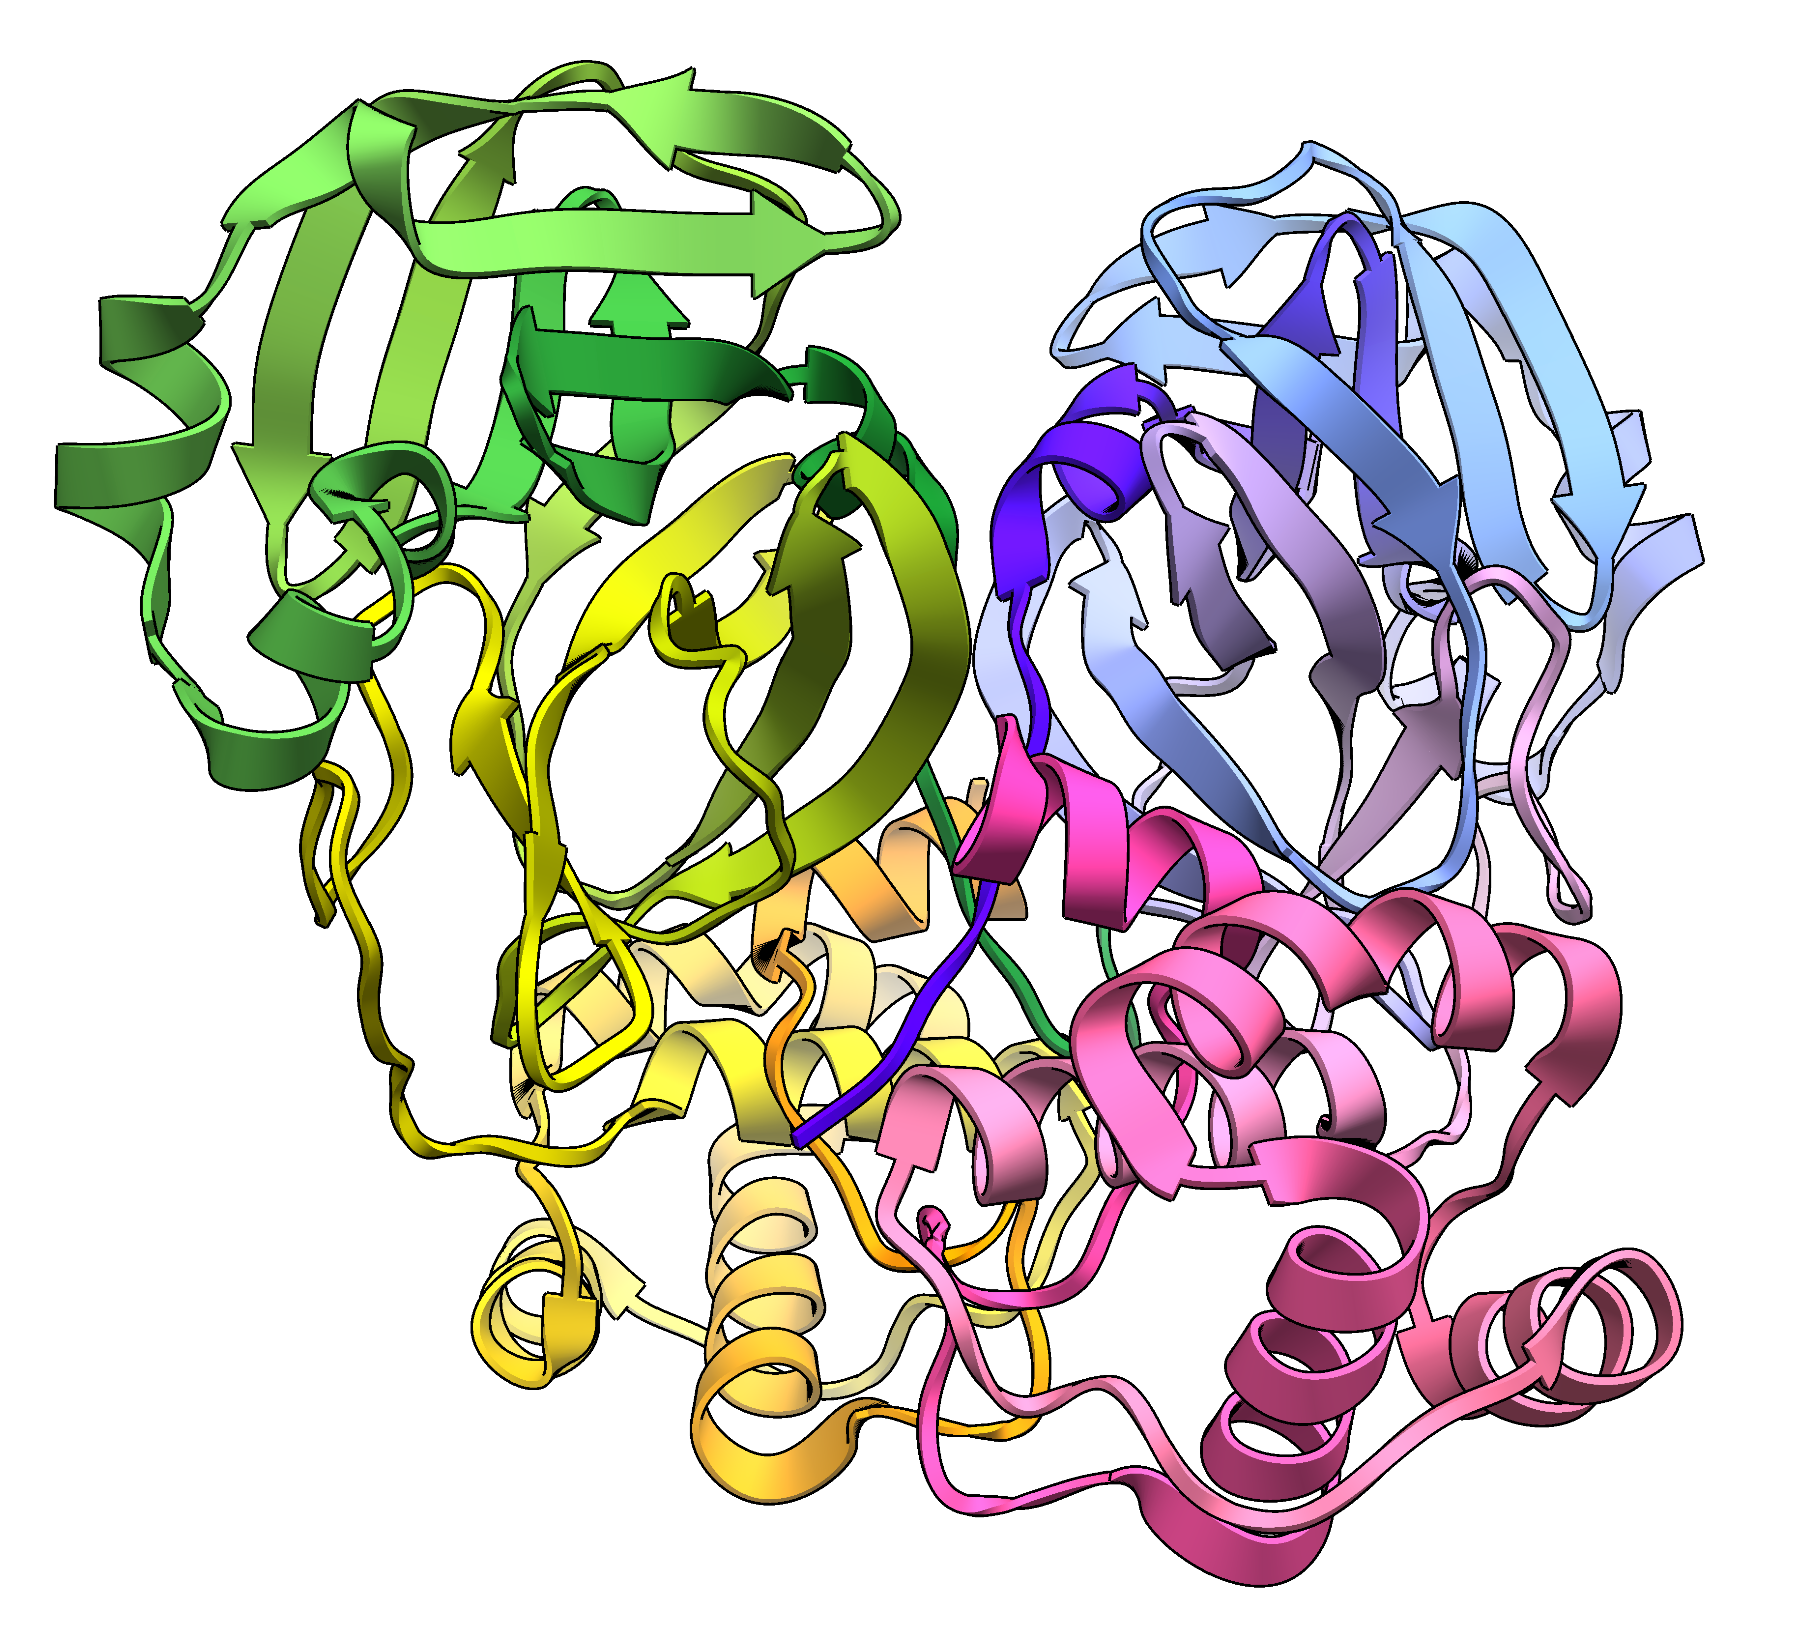 Модель молекулы димера главной протеазы коронавируса SARS-CoV-2 (Mpro)